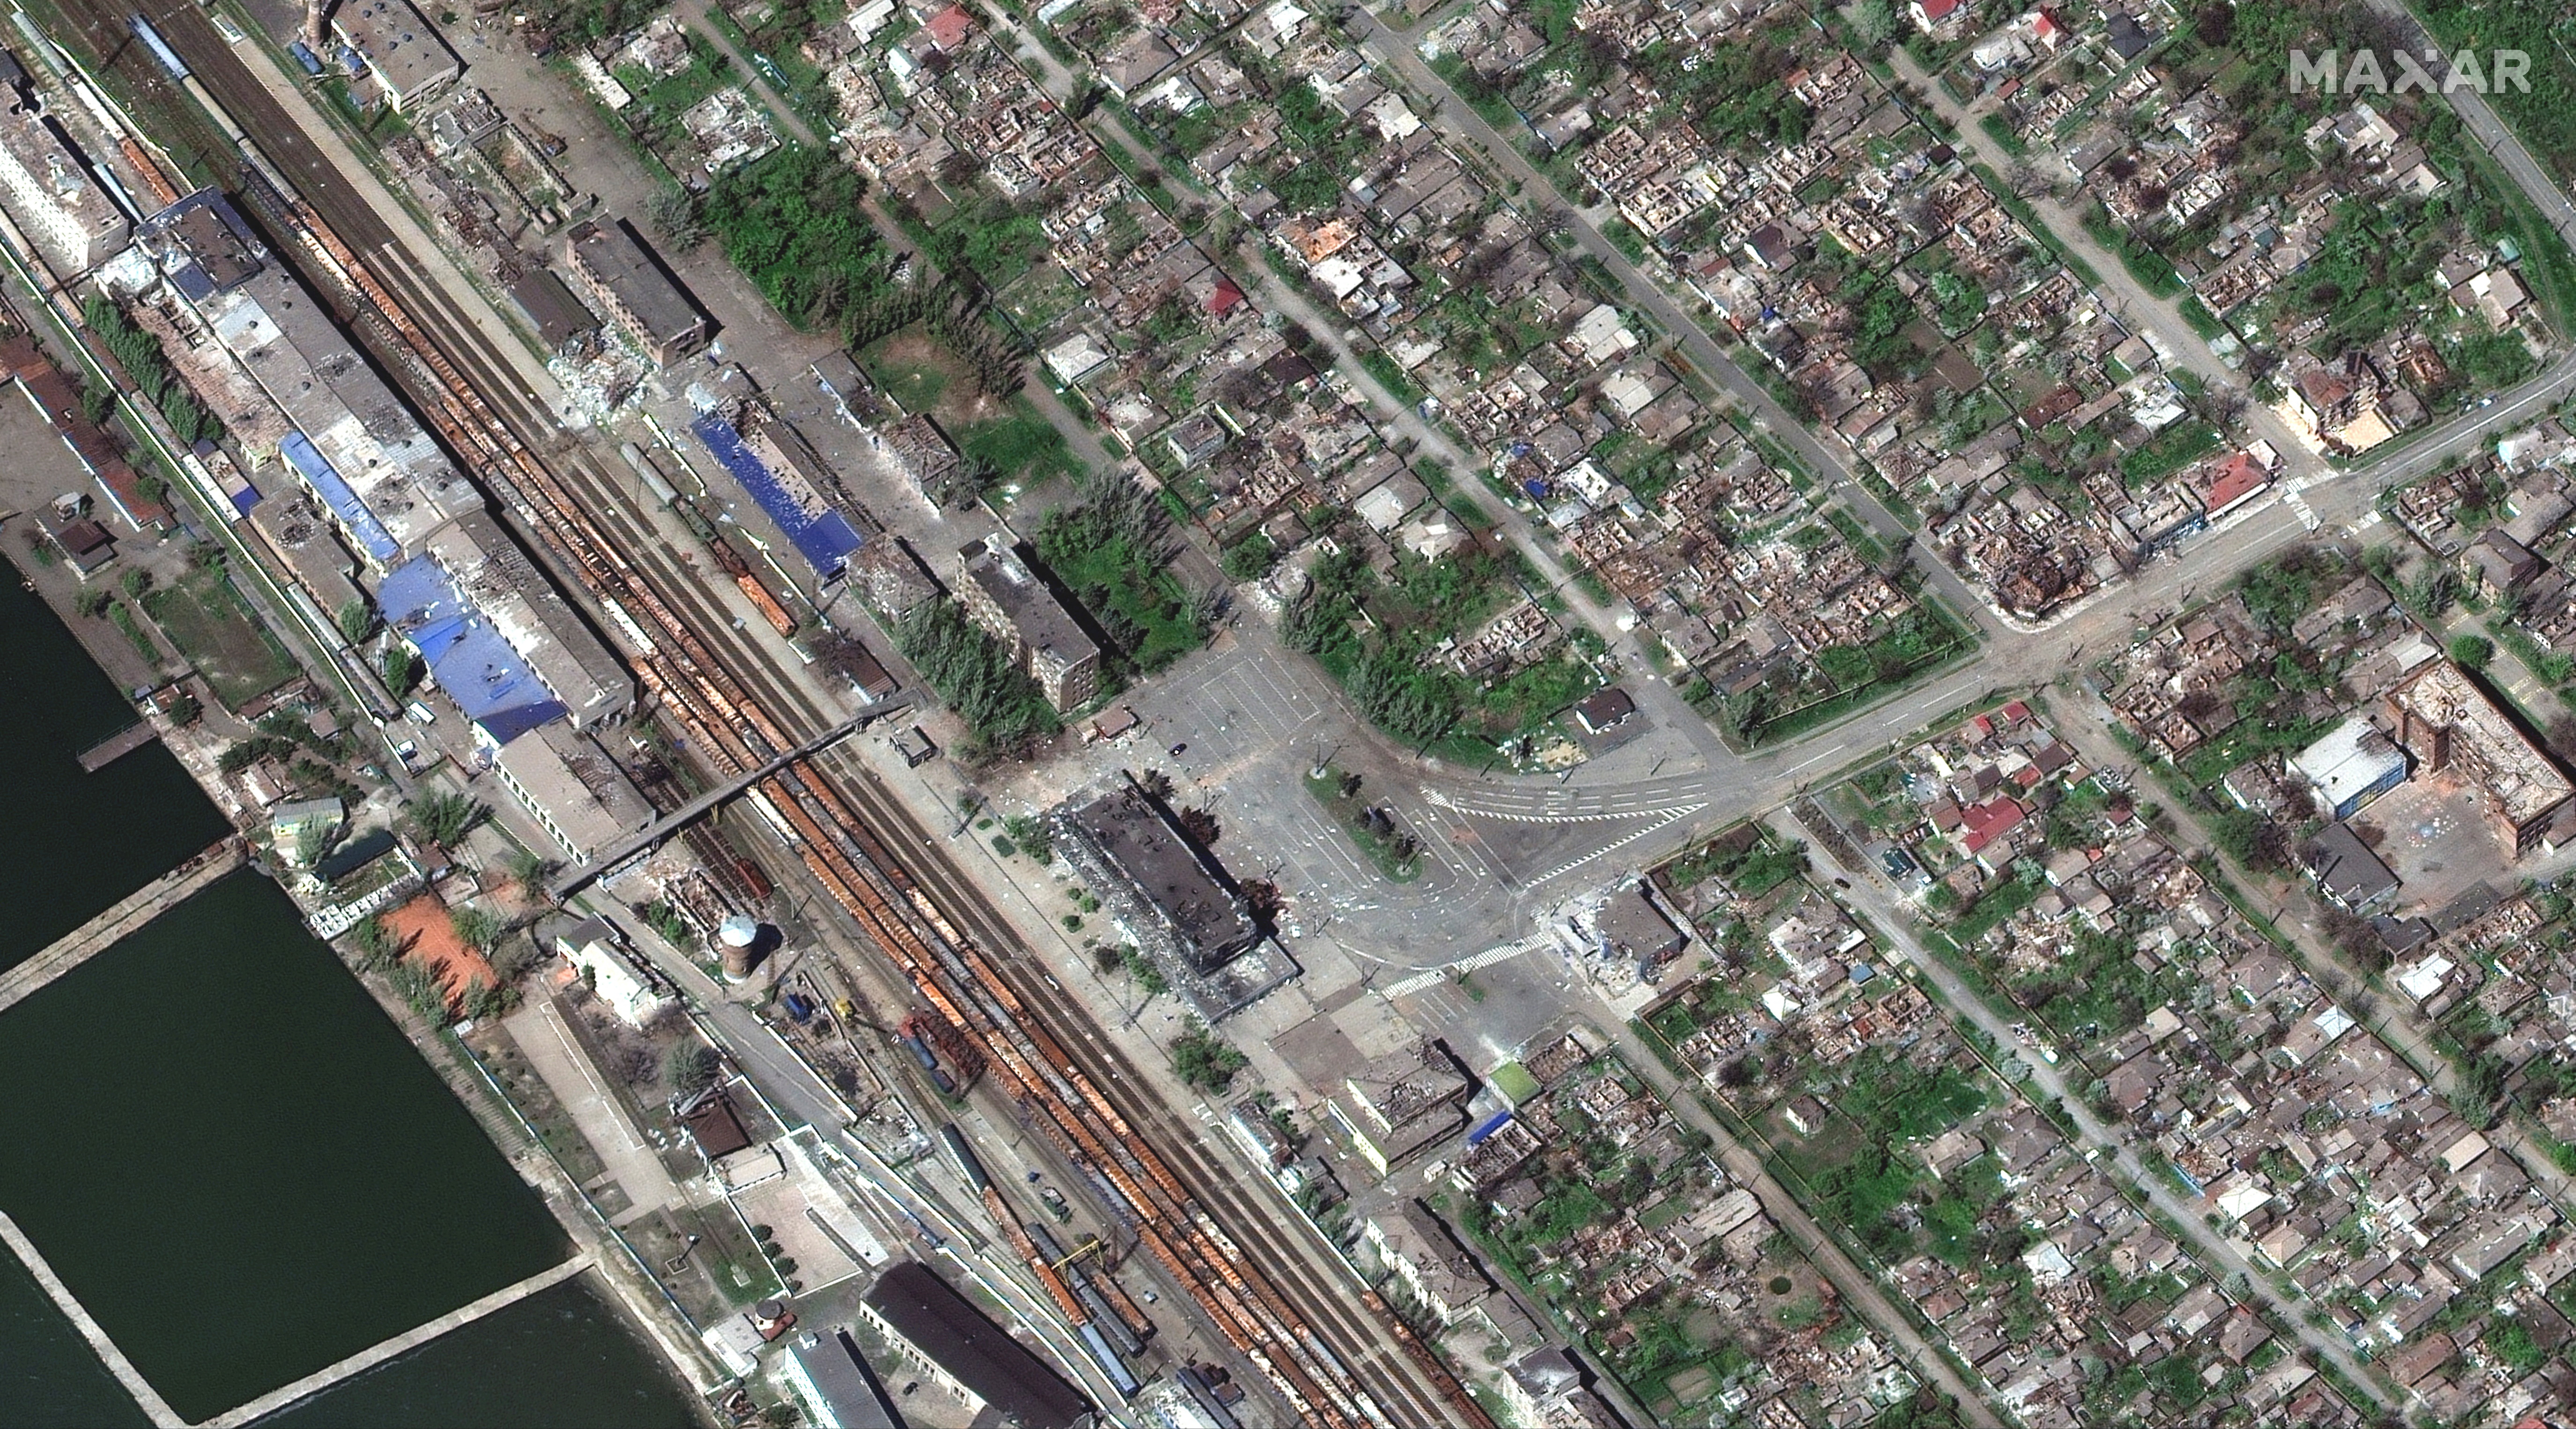 Una imagen de satélite muestra la estación de tren de Mariupol y los edificios destruidos (Maxar Technologies/Handout via REUTERS)